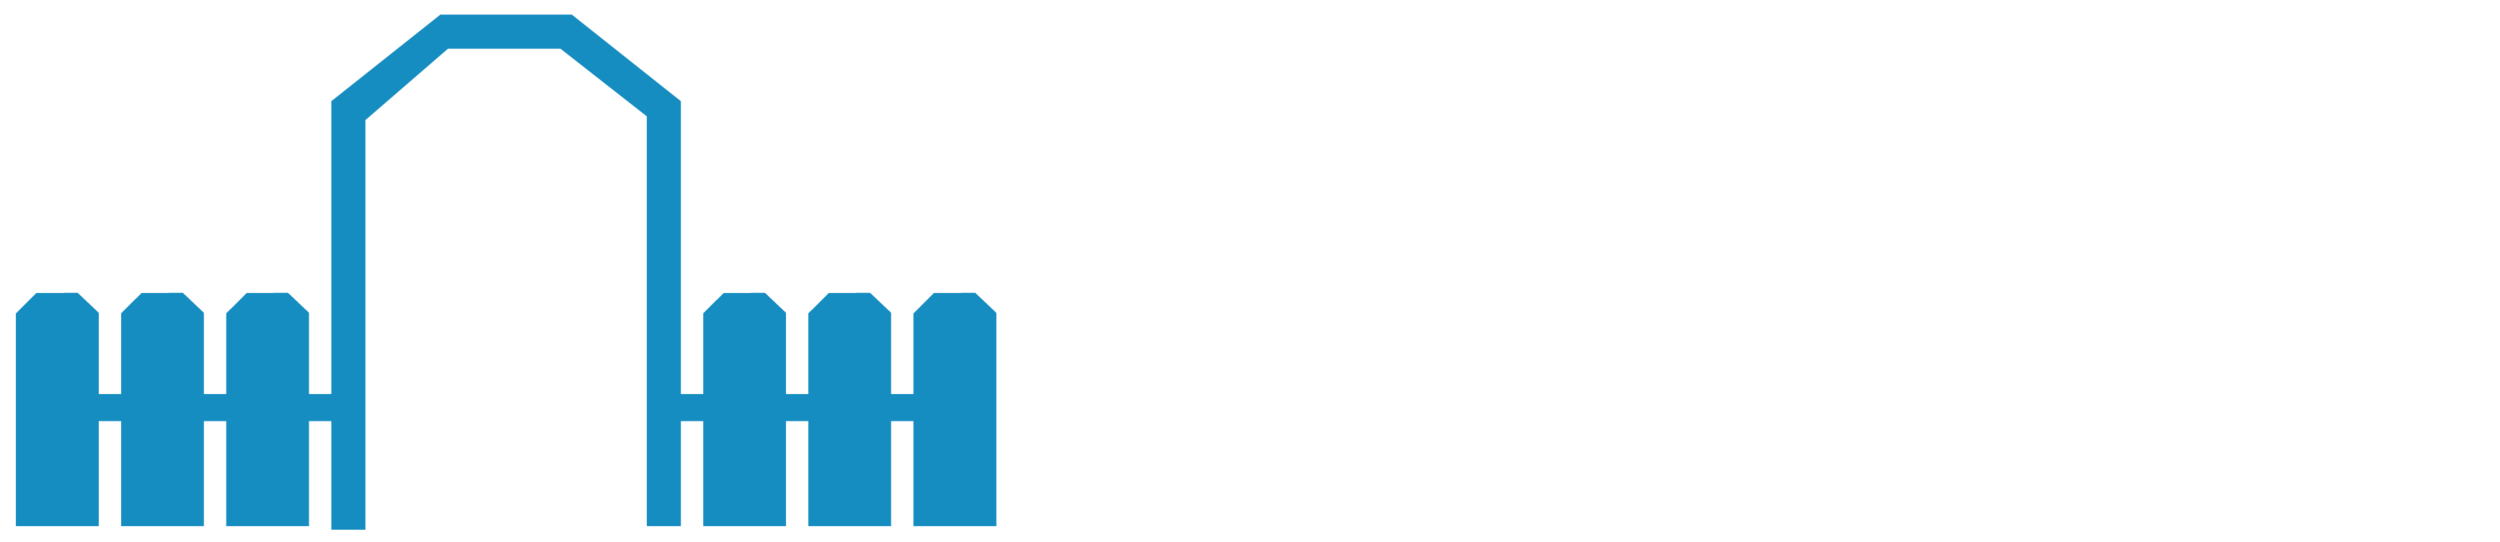 Hyde Park Montessori